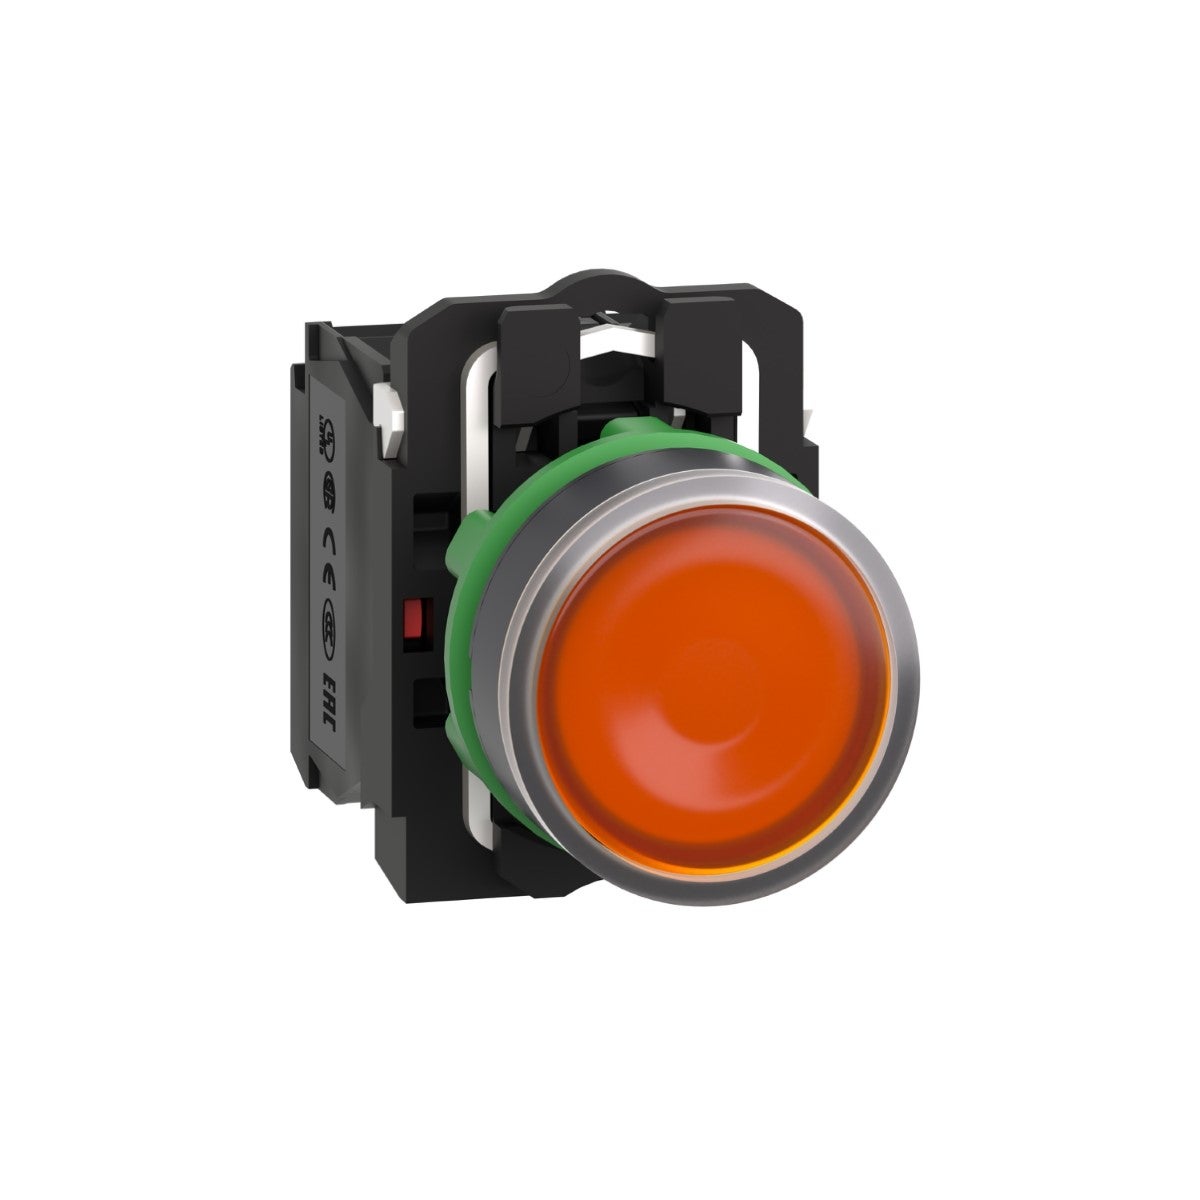 Illuminated push button, Harmony XB5, plastic, orange flush, 22mm, universal LED, plain lens, 1NO + 1NC, 110...120V AC